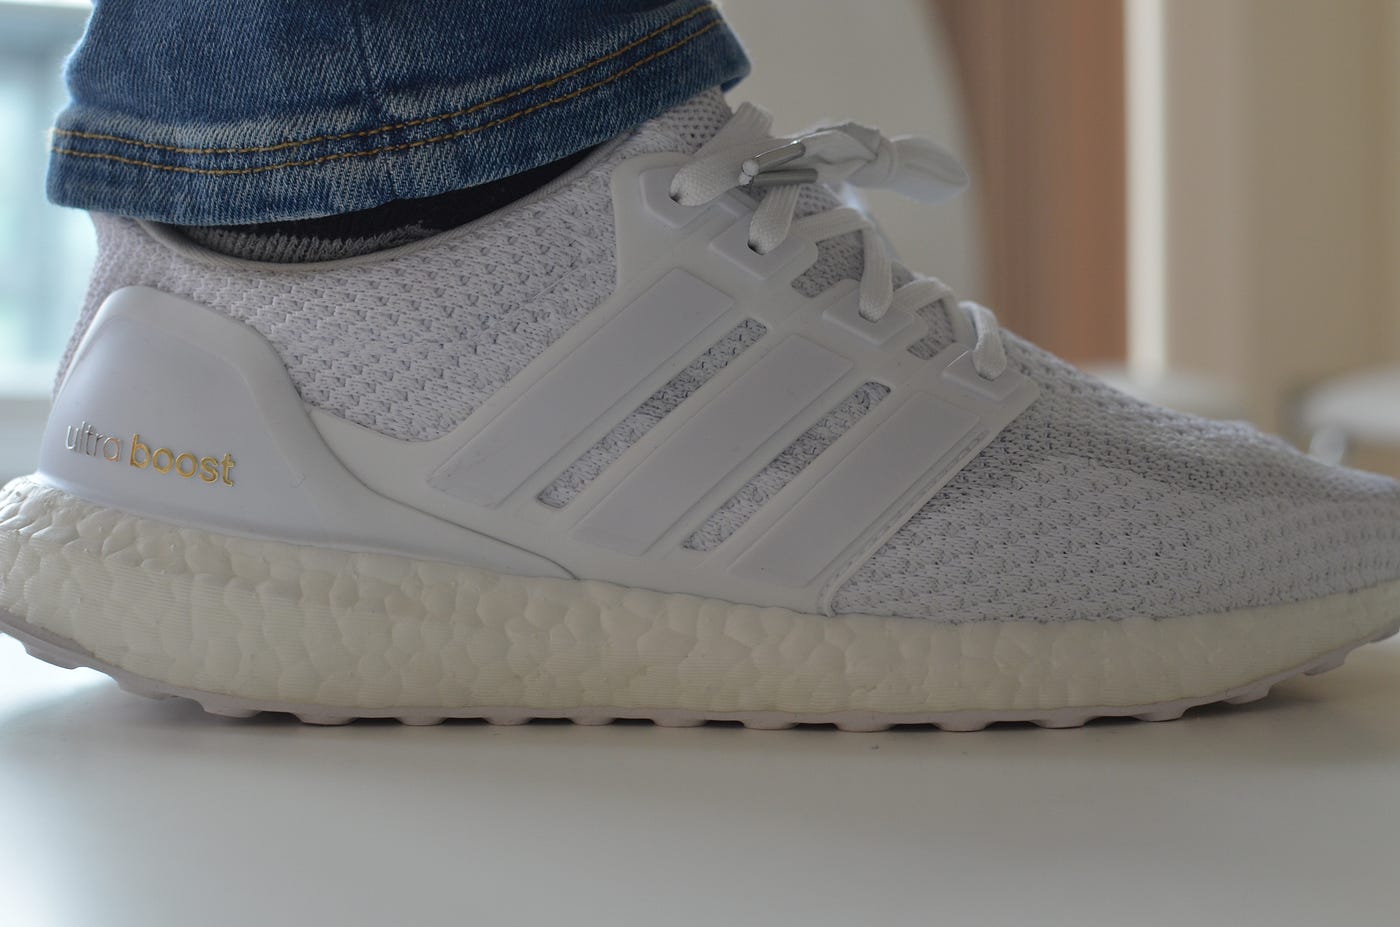 Adidas Ultra boost Triple white 2.0 | by Tobiadey.eth | Medium